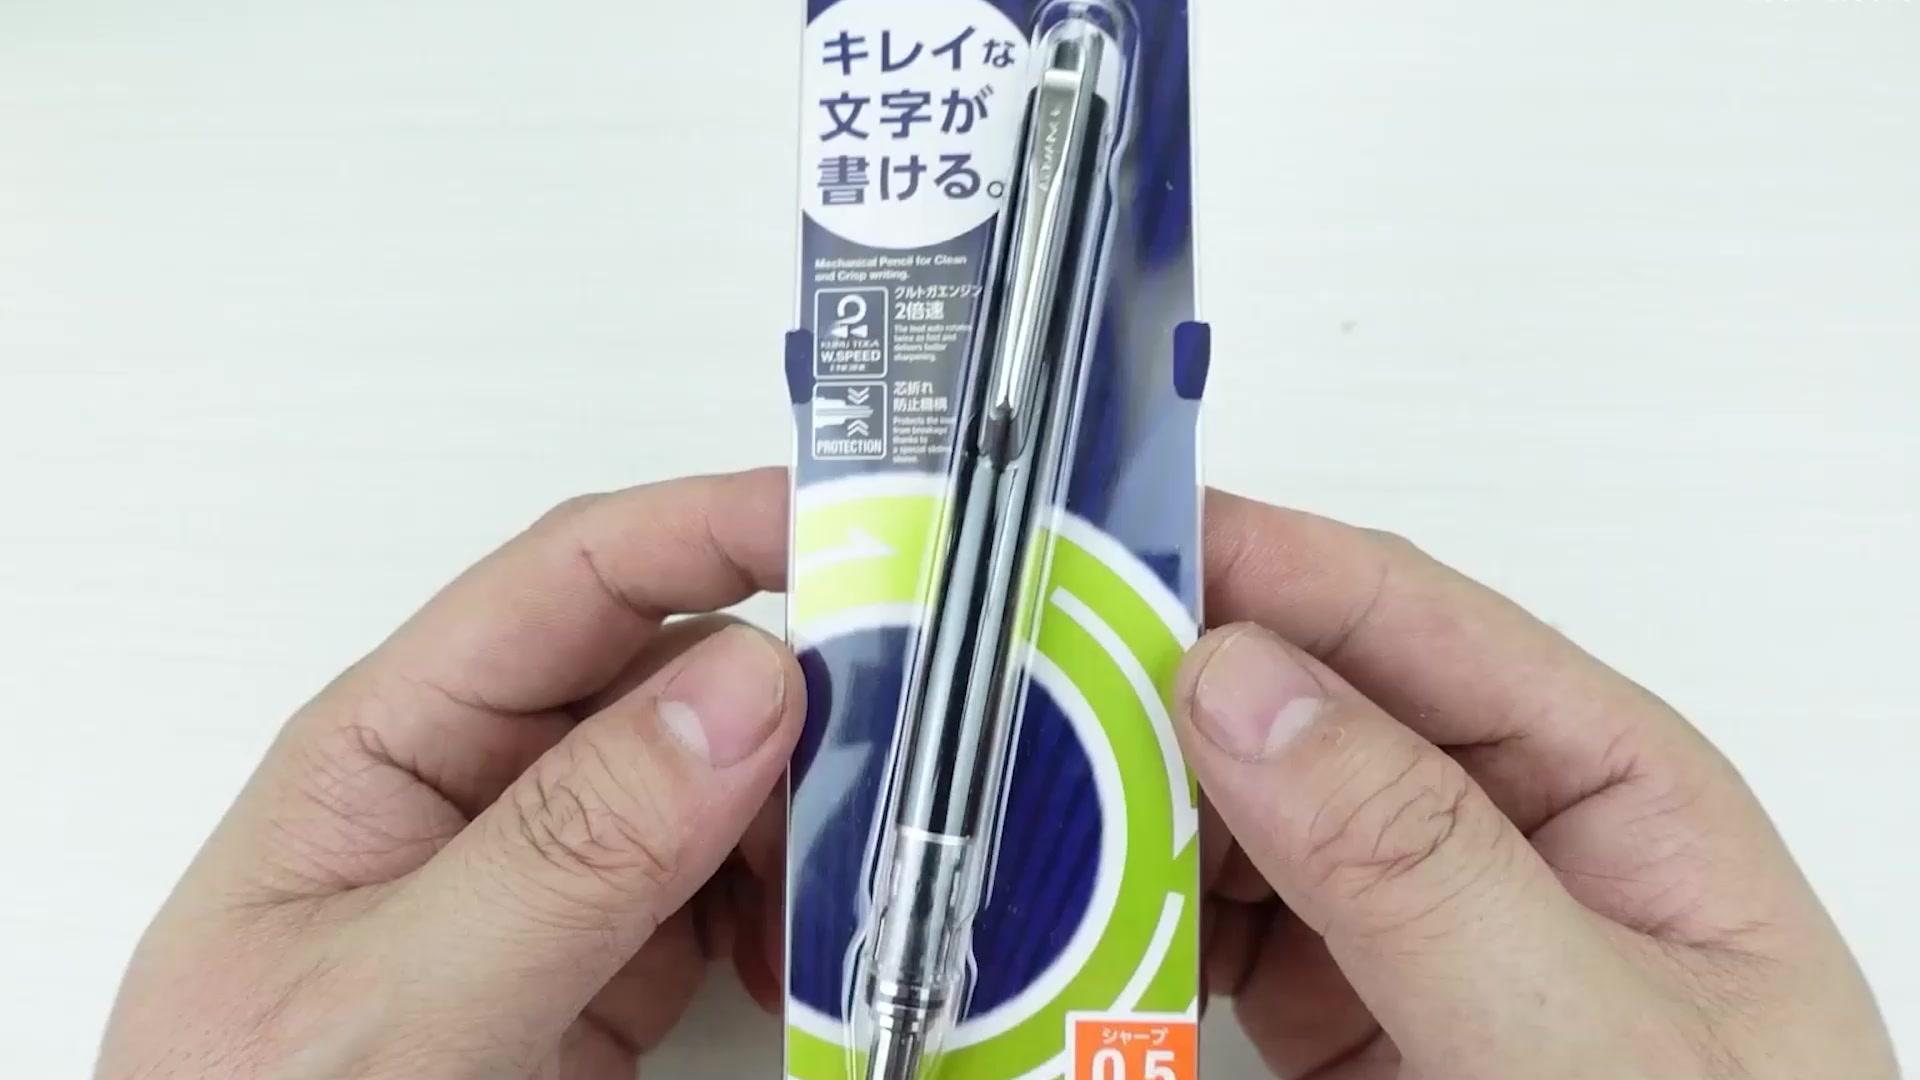 写字时铅芯会旋转的日本铅笔，拆开看看它内部极致的设计细节  #硬核拆解 